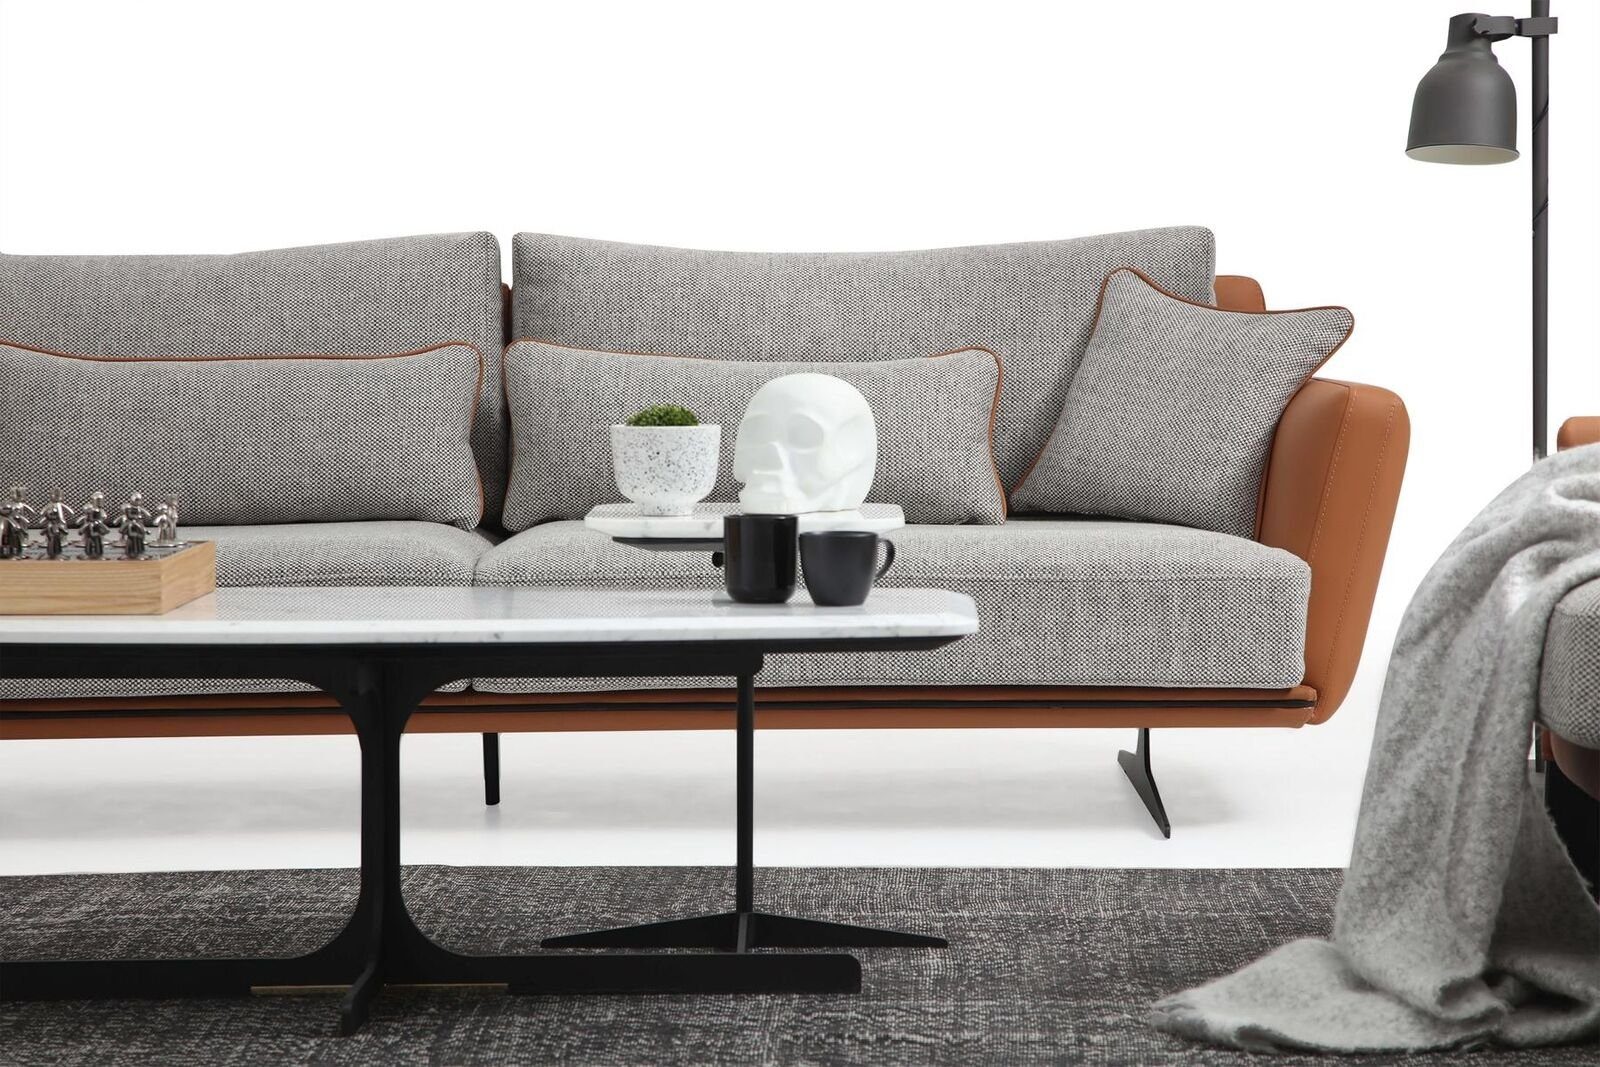 JVmoebel 2-Sitzer Europa Modern Teile, Sitzer Zweisitzer Wohnzimmer in Stoff 1 2 Design Grau, Sofa Orange Made